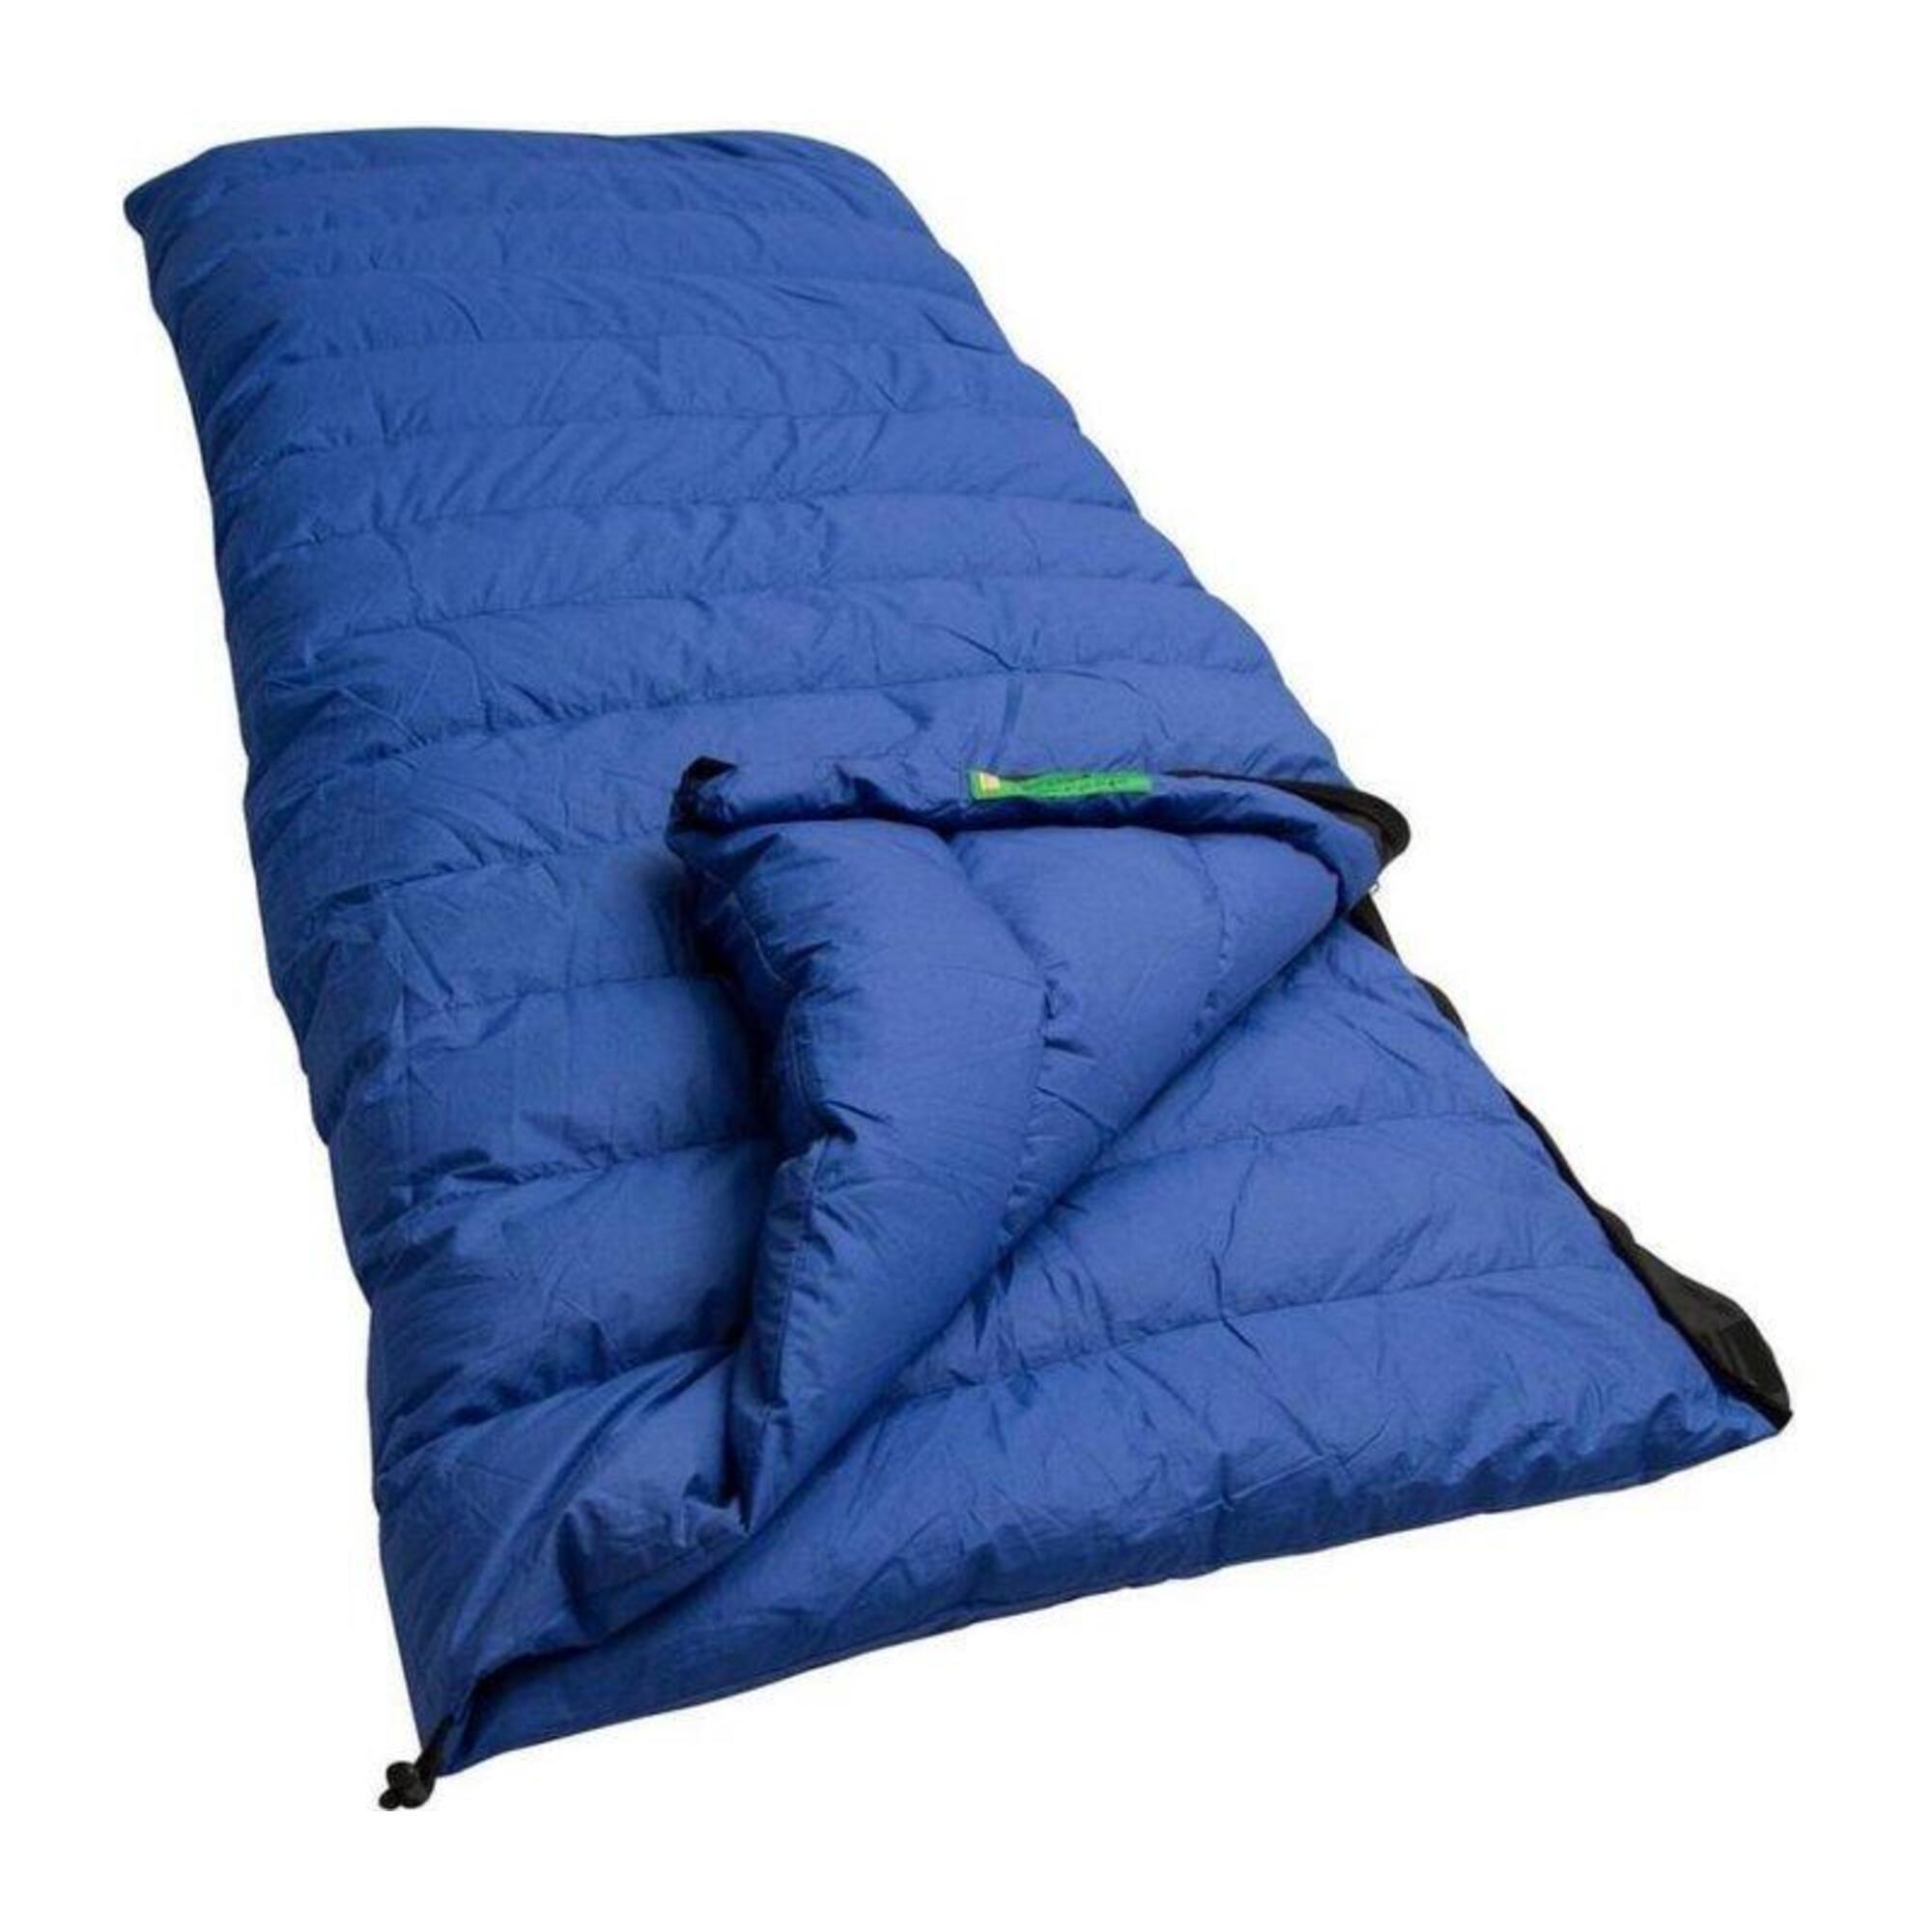 Спальный мешок Lowland Companion CC 1 с пуховым одеялом, синий спальный мешок чайка large250